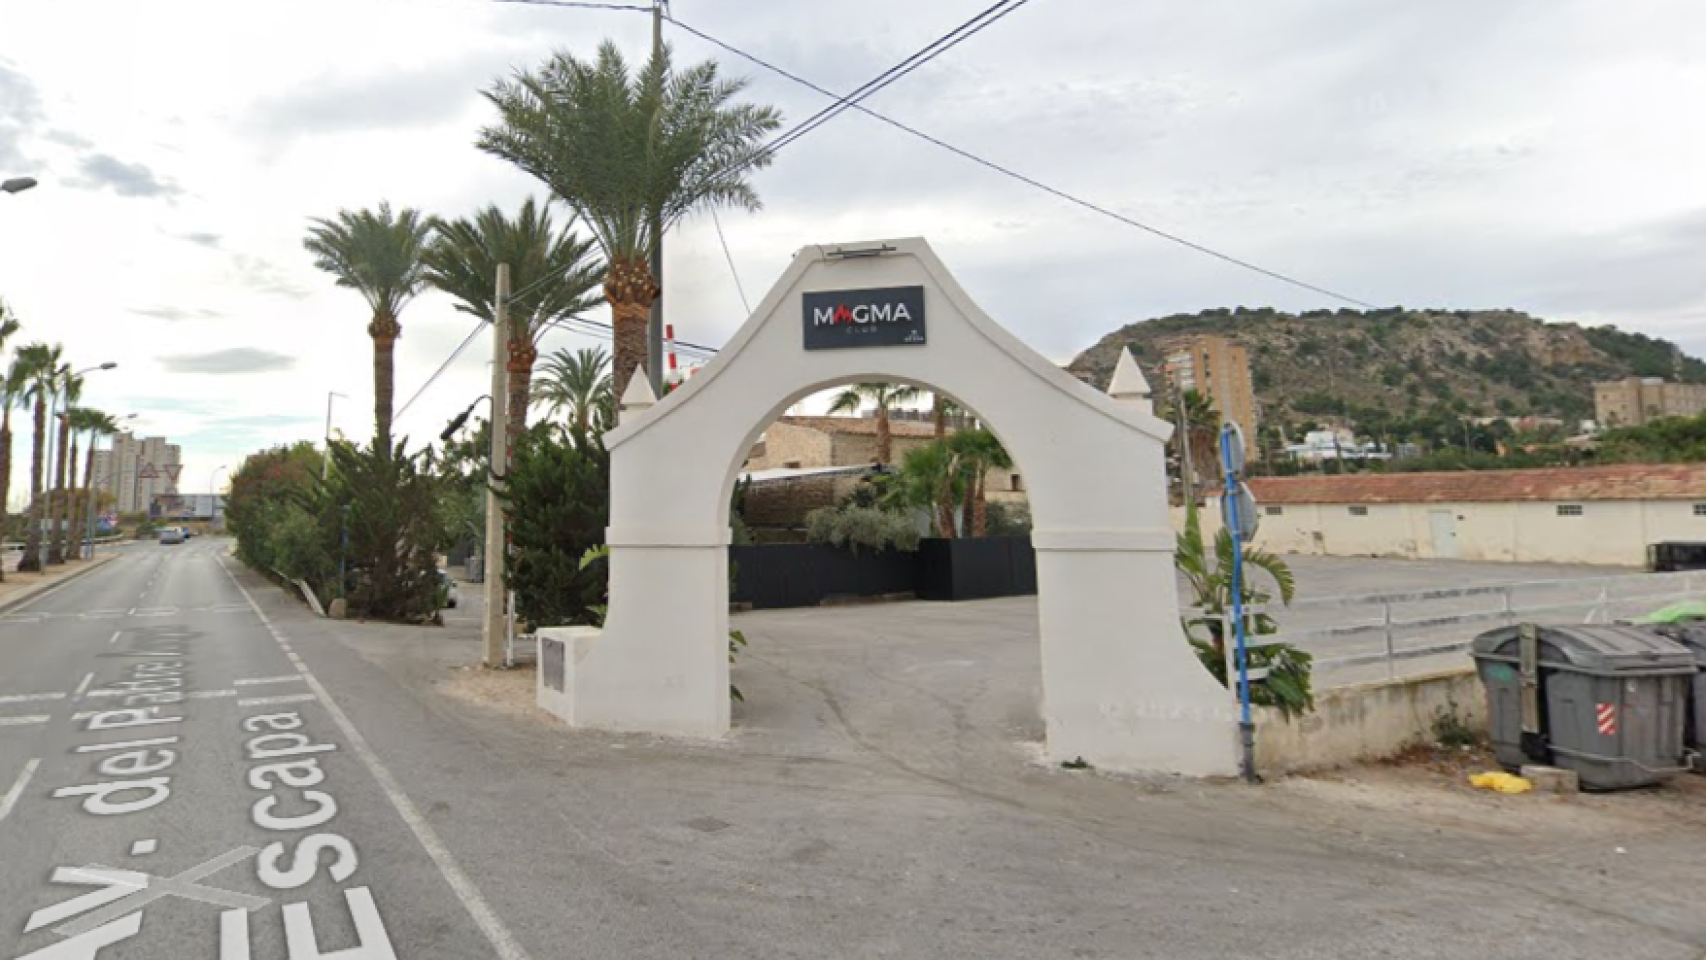 Puerta de Magma Club.